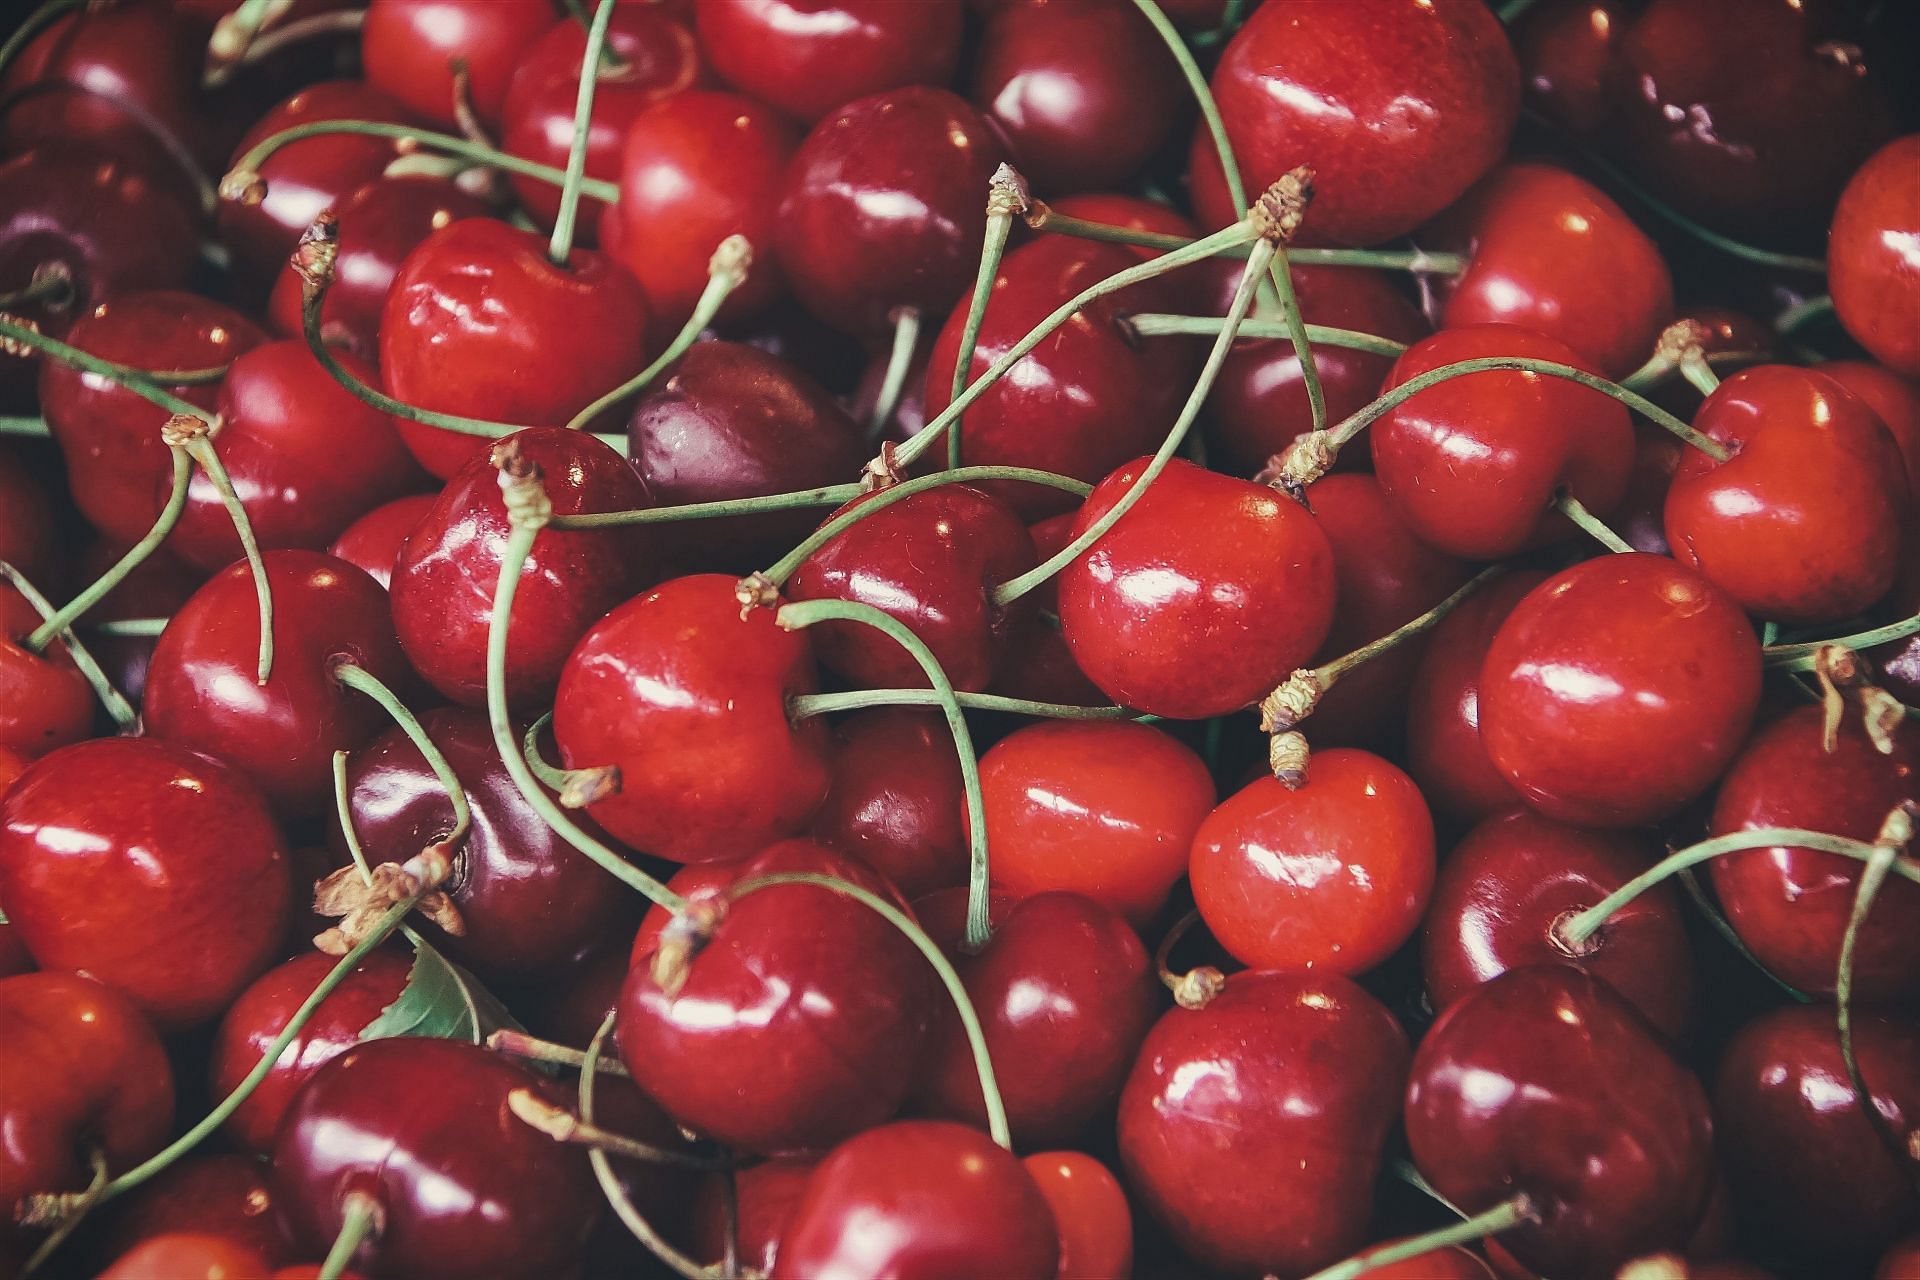 Foods to reduce gout- Cherries help in lowering uric acid levels. (Image via Pexels/ Simon Berger)